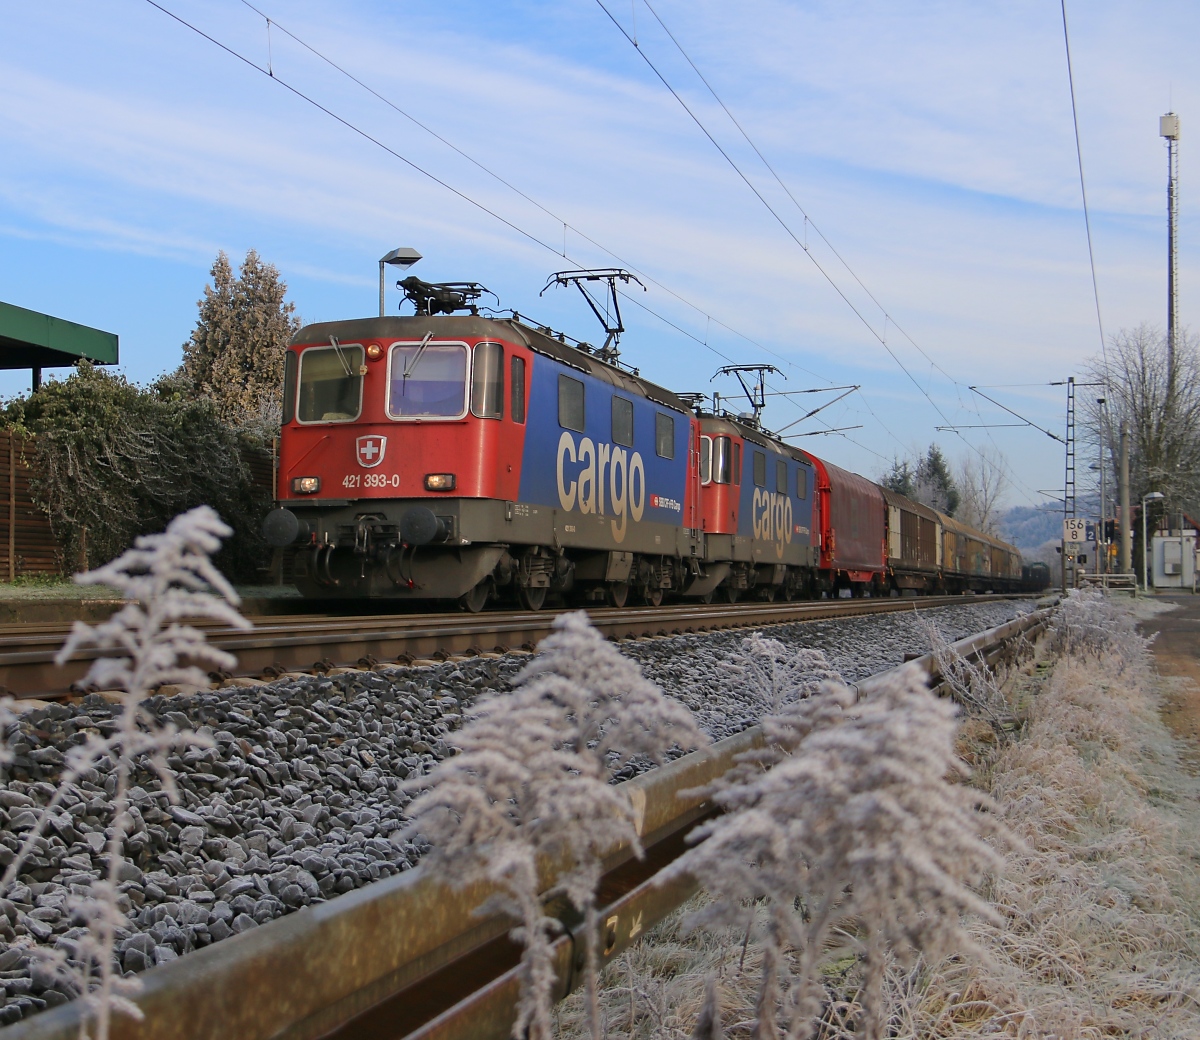 421 393-0 in Doppeltraktion mit 421 374-0 und dem Novelis-Zug in Fahrtrichtung Süden. Aufgenommen am 09.01.2016 in Ludwigsau-Friedlos.